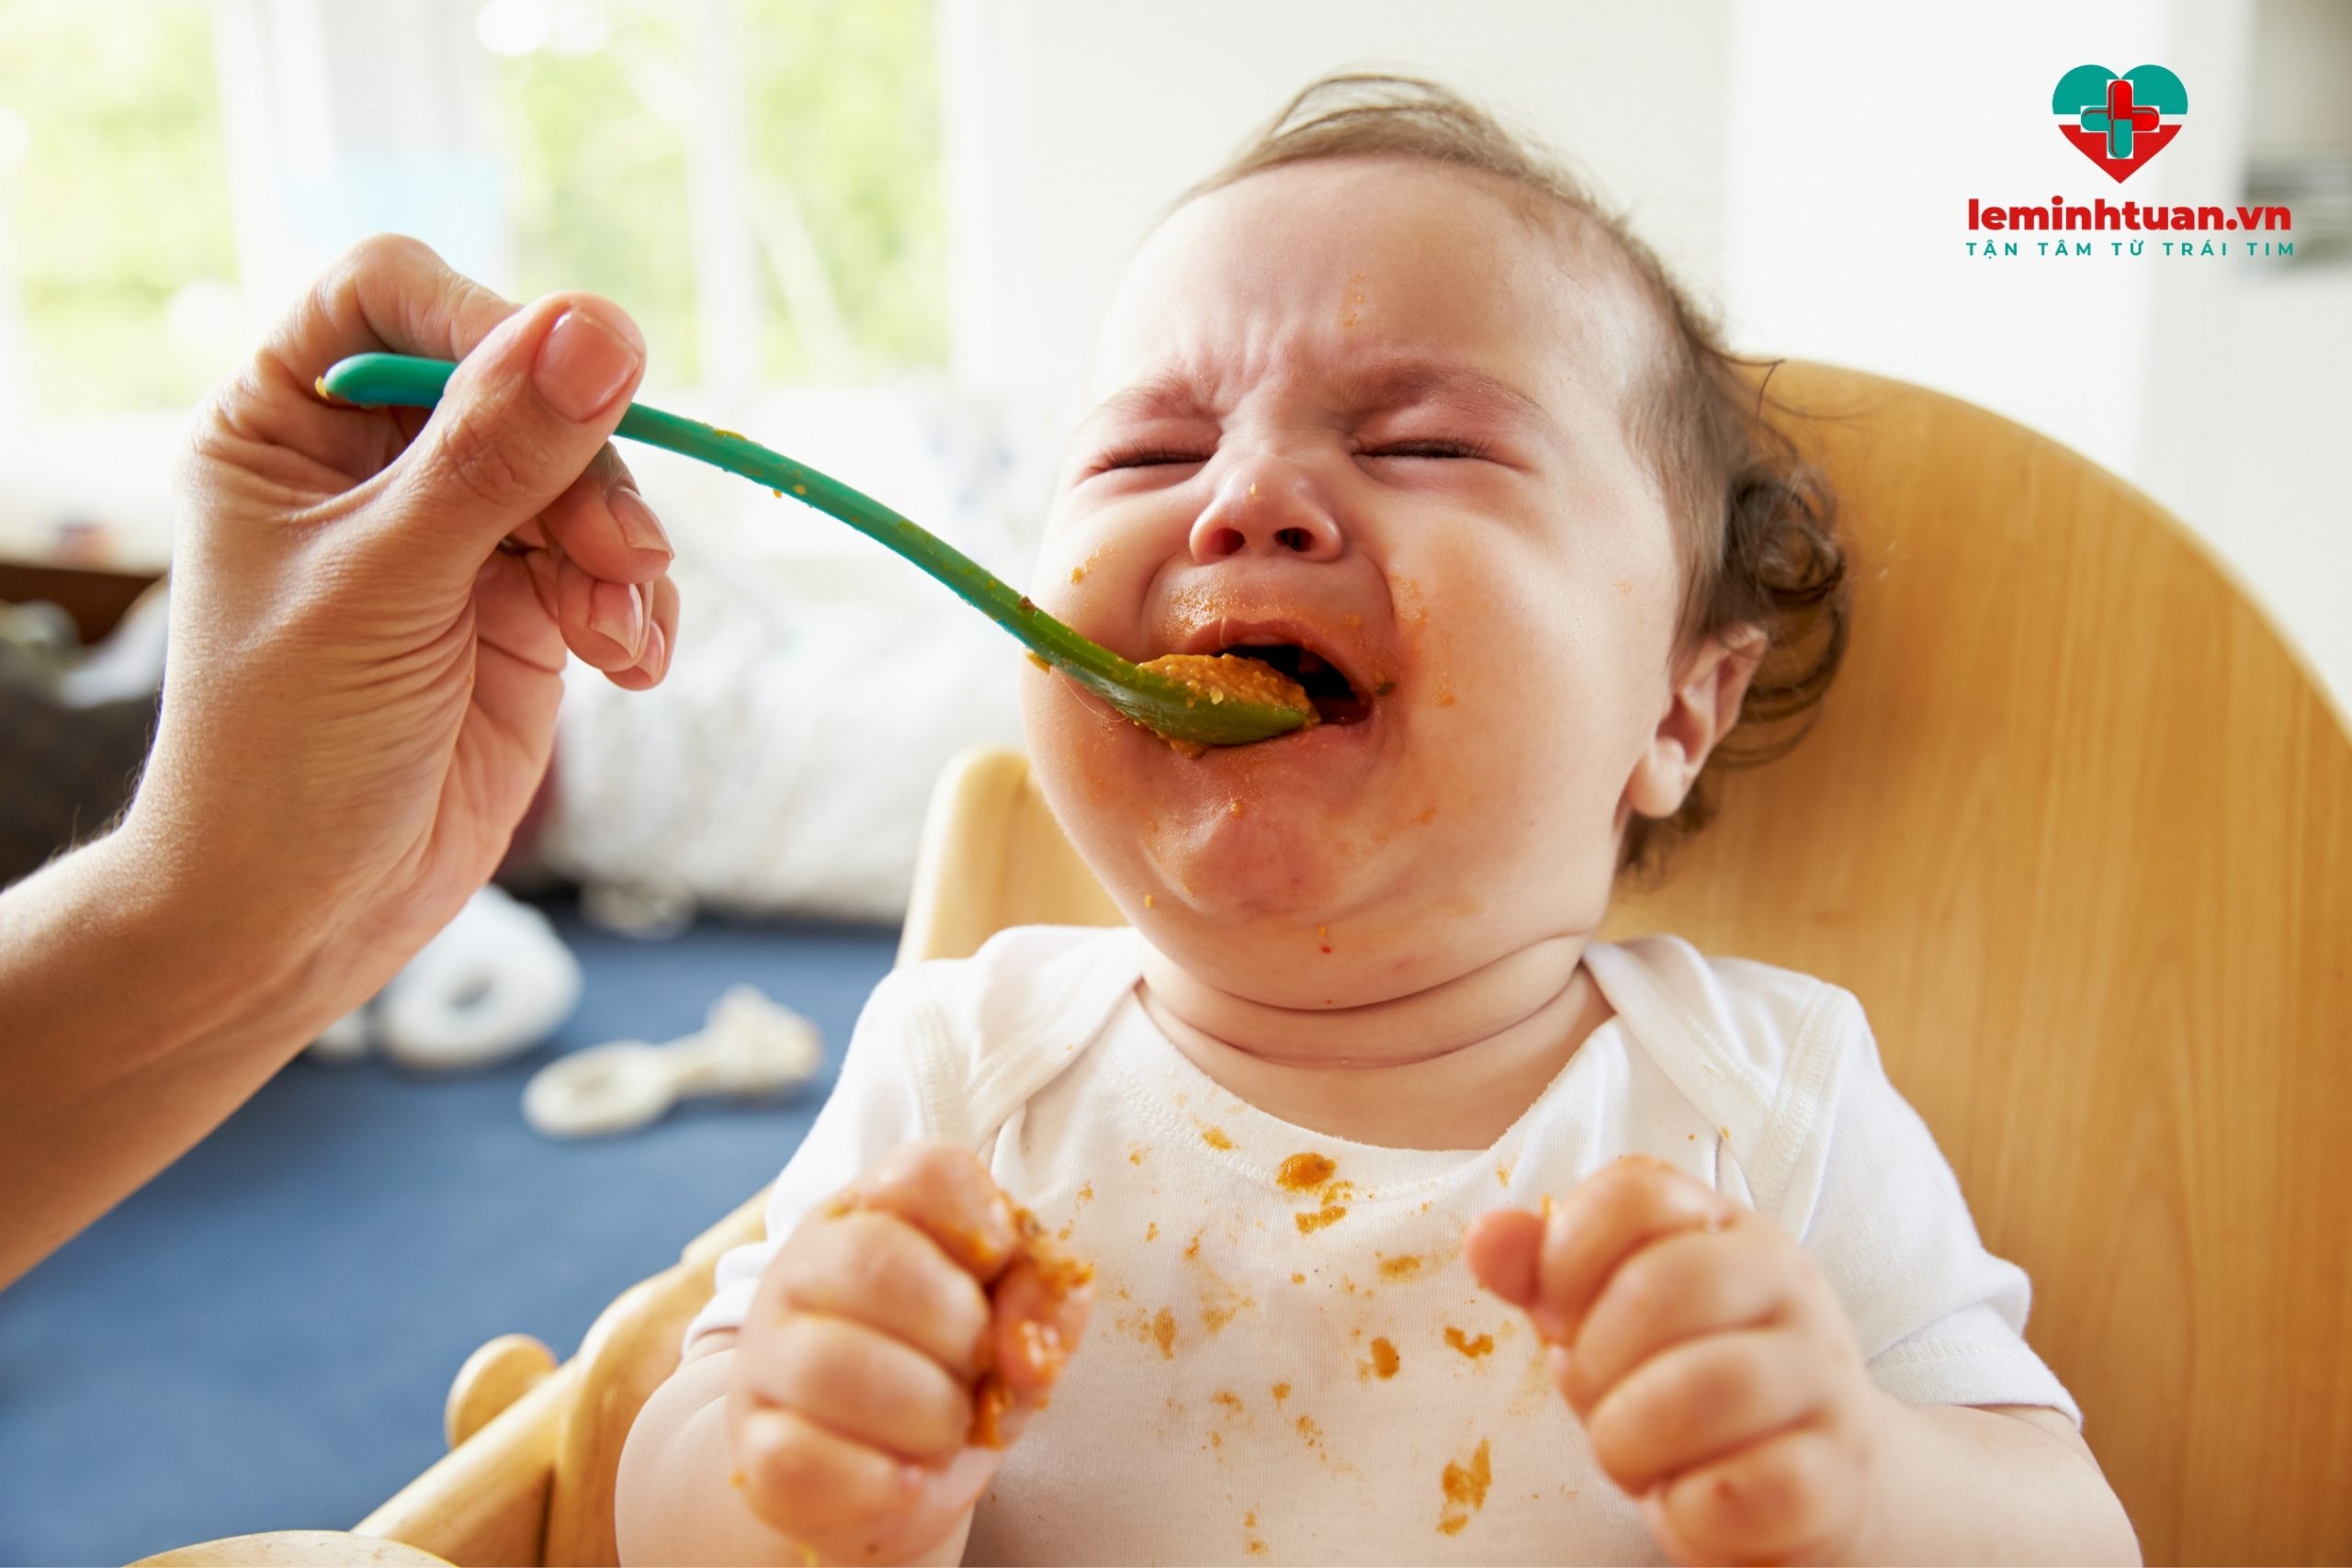 Em bé không chịu ăn, biếng ăn có dấu hiệu gì?